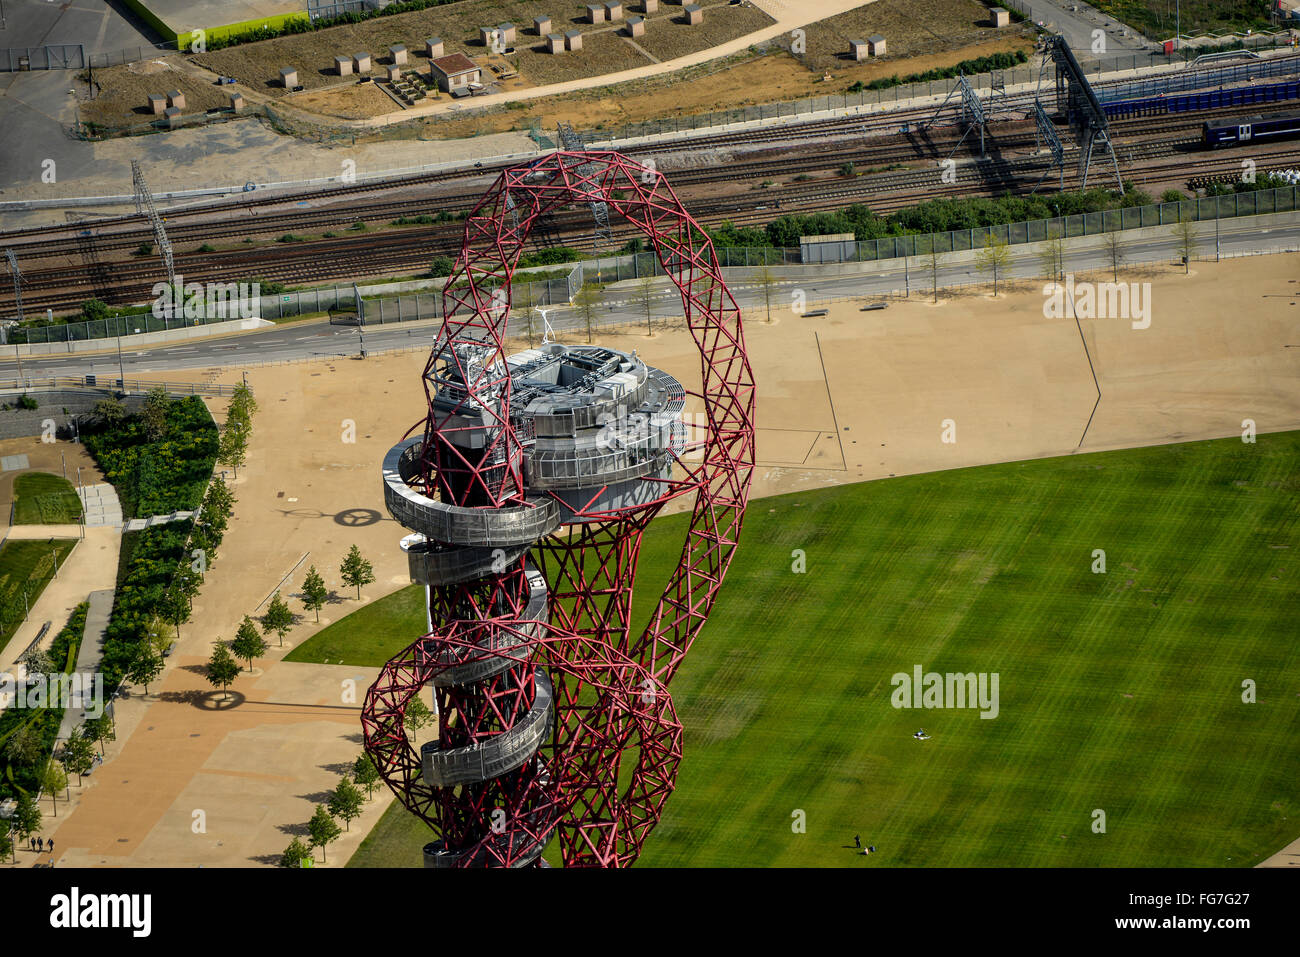 Une vue aérienne de l'ArcelorMittal Orbit sur le parc olympique, Stratford, East London Banque D'Images